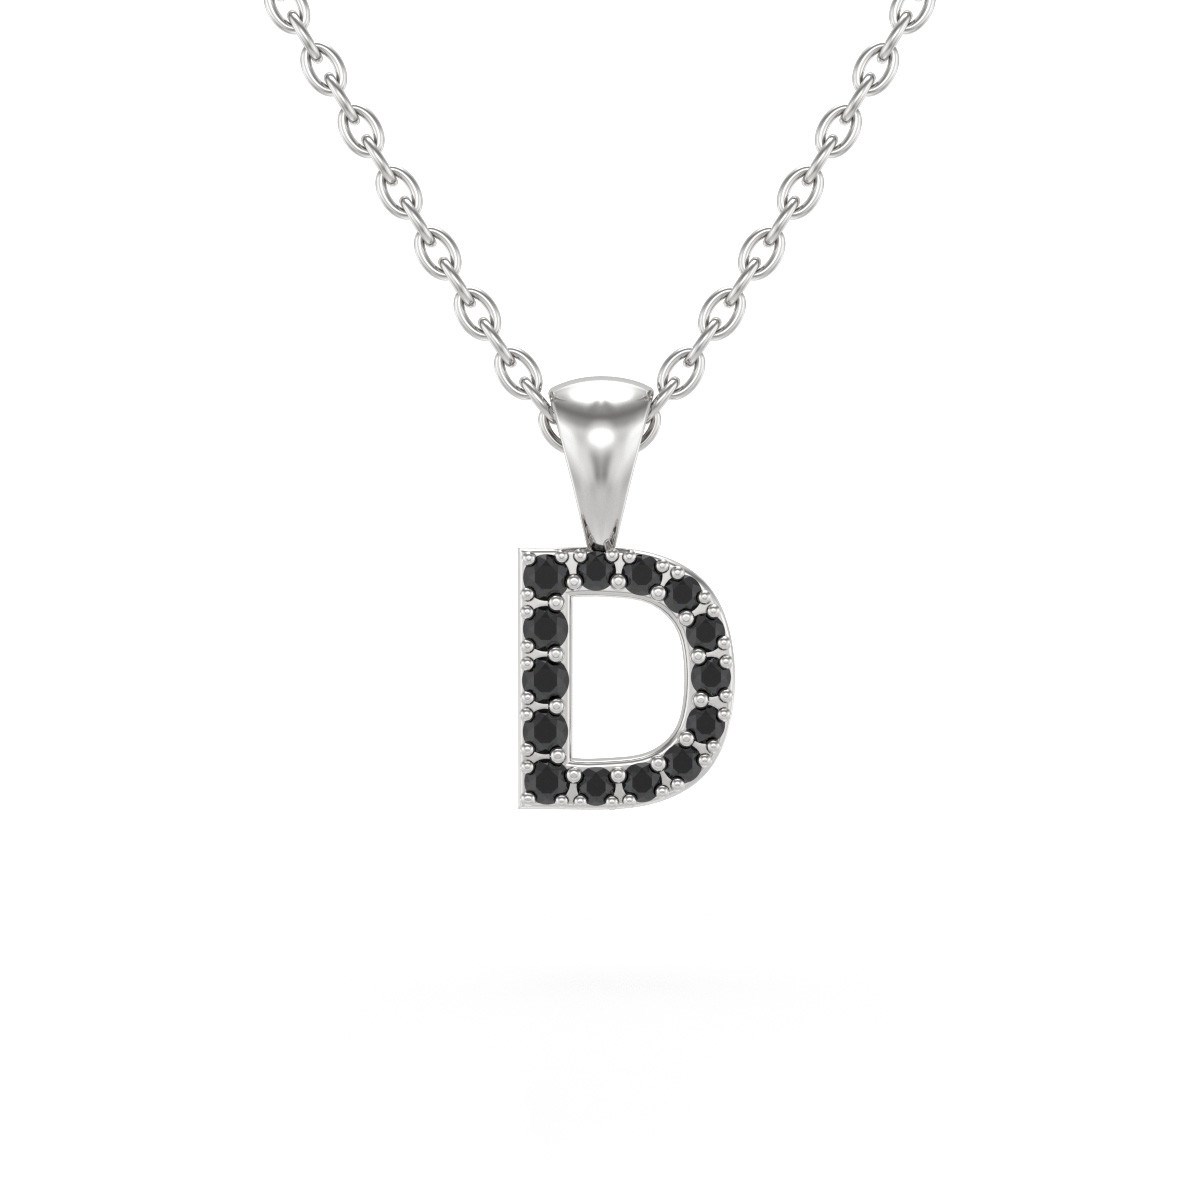 Collier Pendentif ADEN Lettre D Or 750 Blanc Diamant Noir Chaine Or 750 incluse 0.72grs